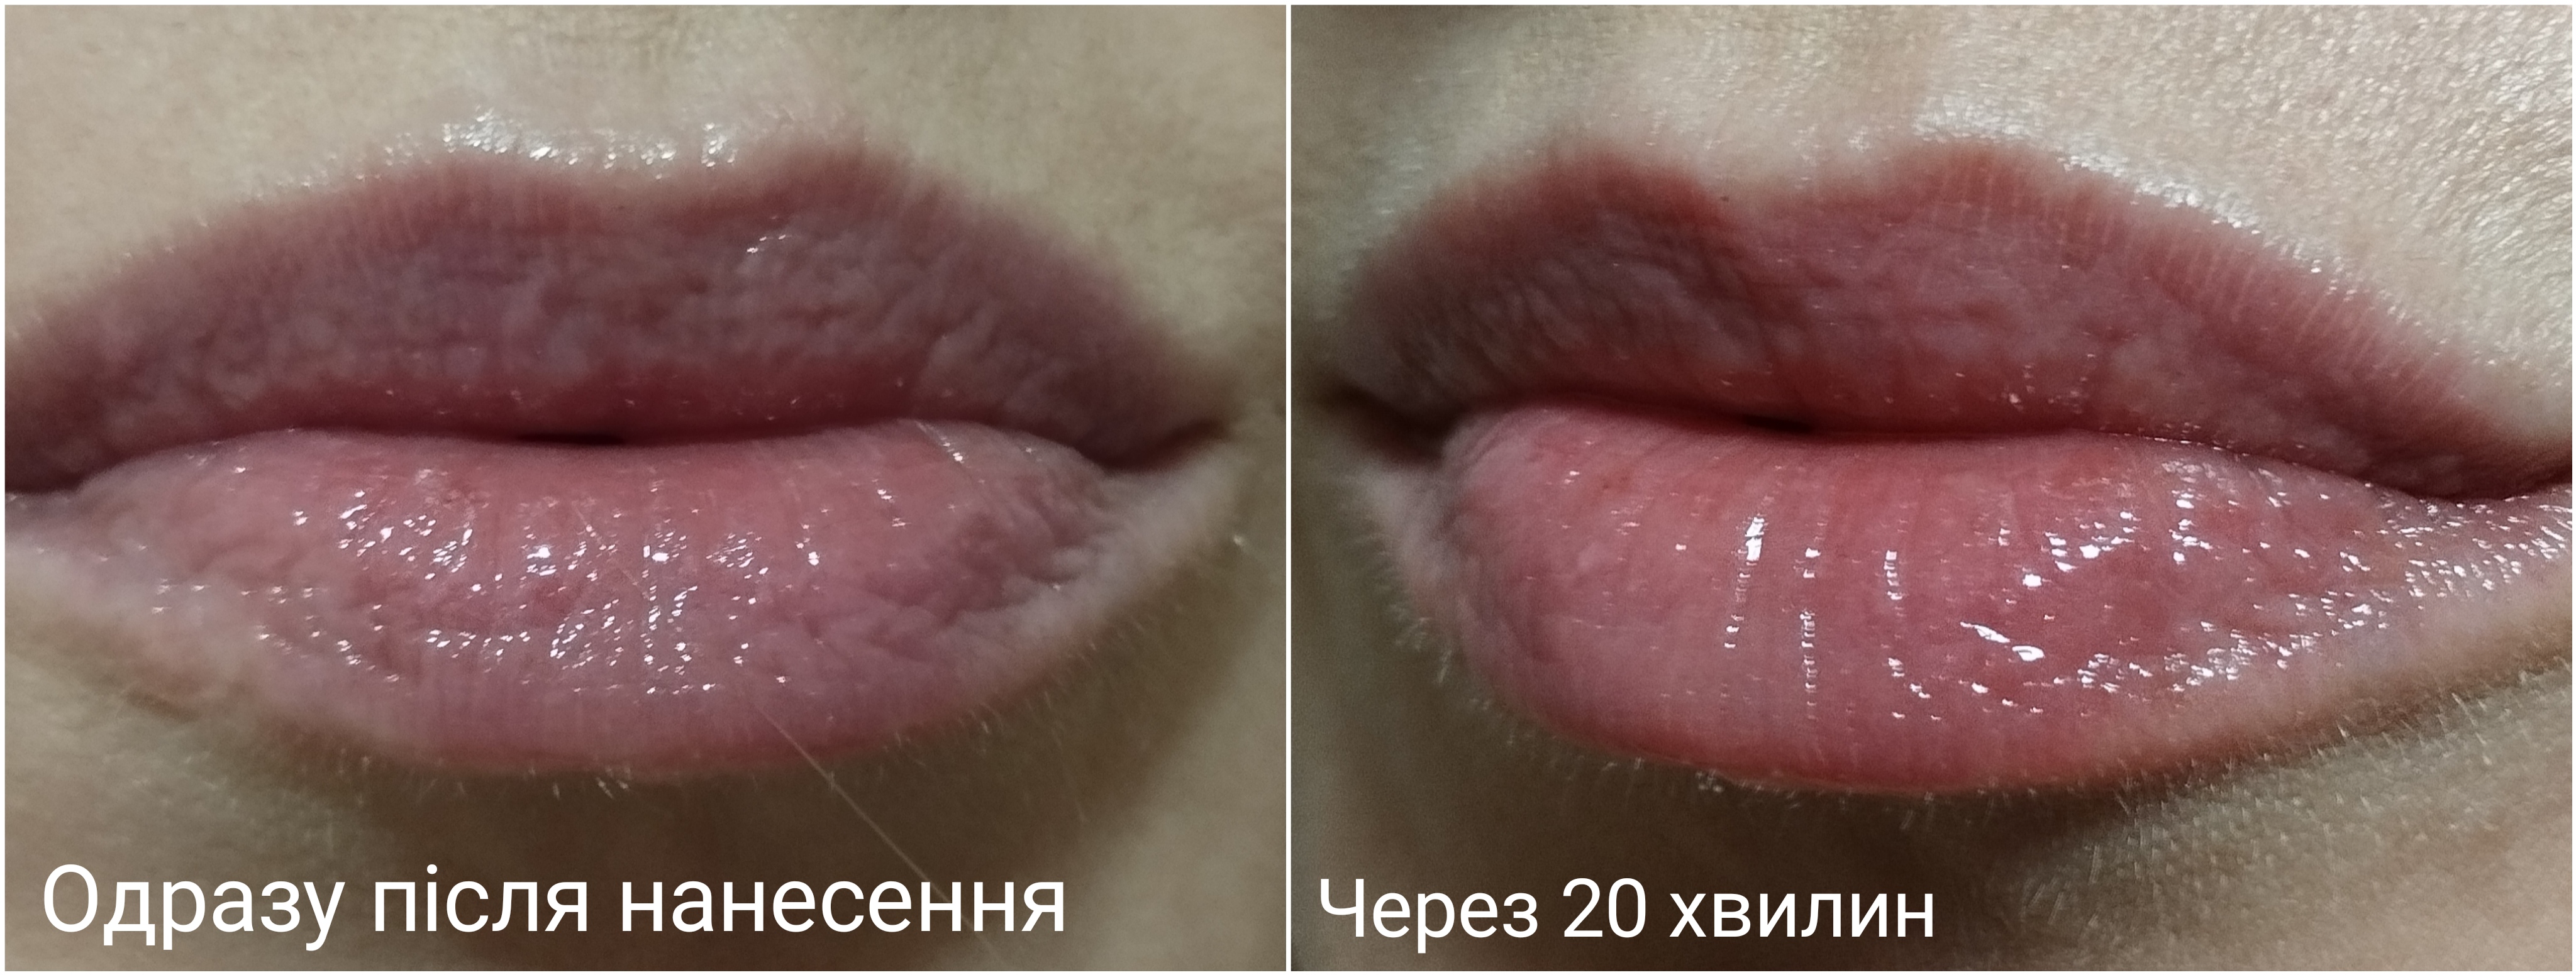 6 відтінків. Плампер від Maybelline не вразив ефектом збільшення губ, але по своєму сподобався